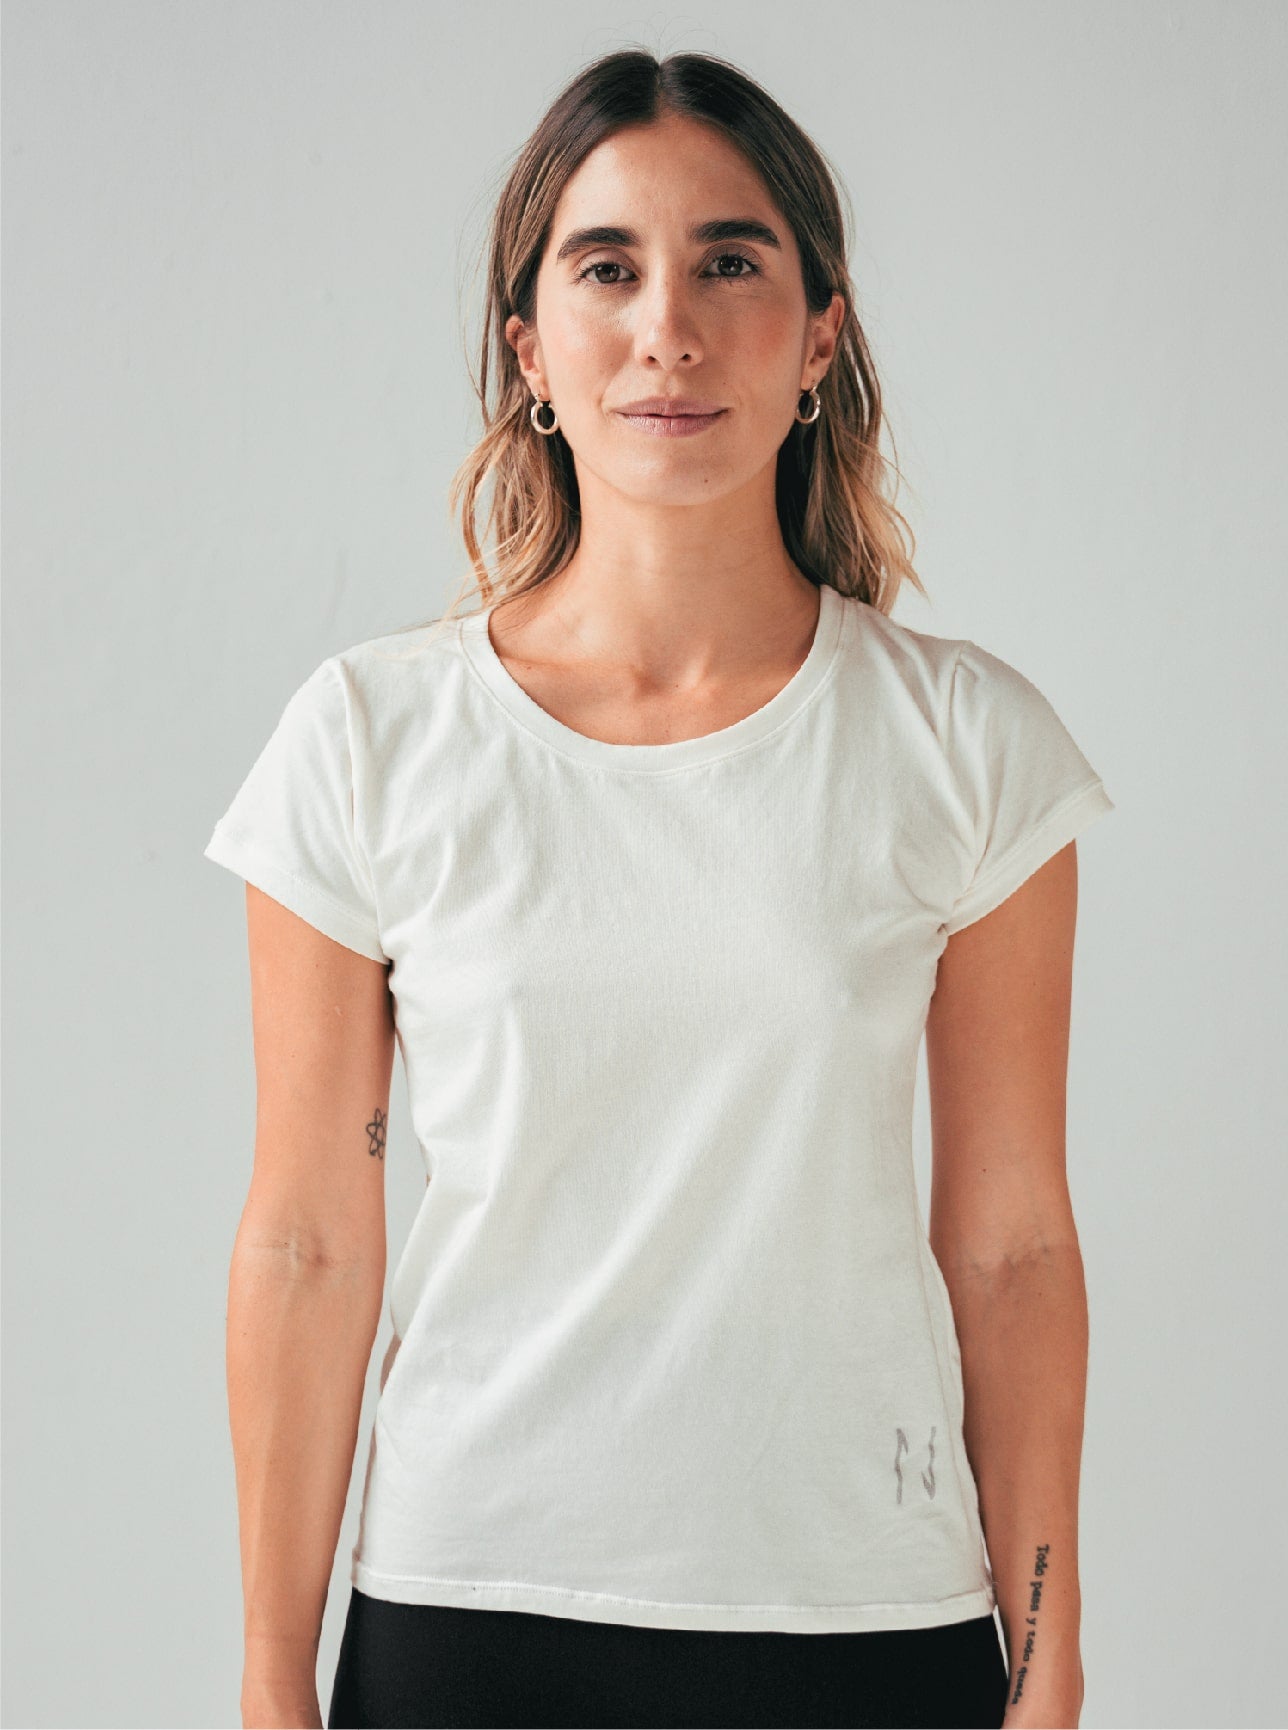 Camiseta manga corta de algodón para mujer